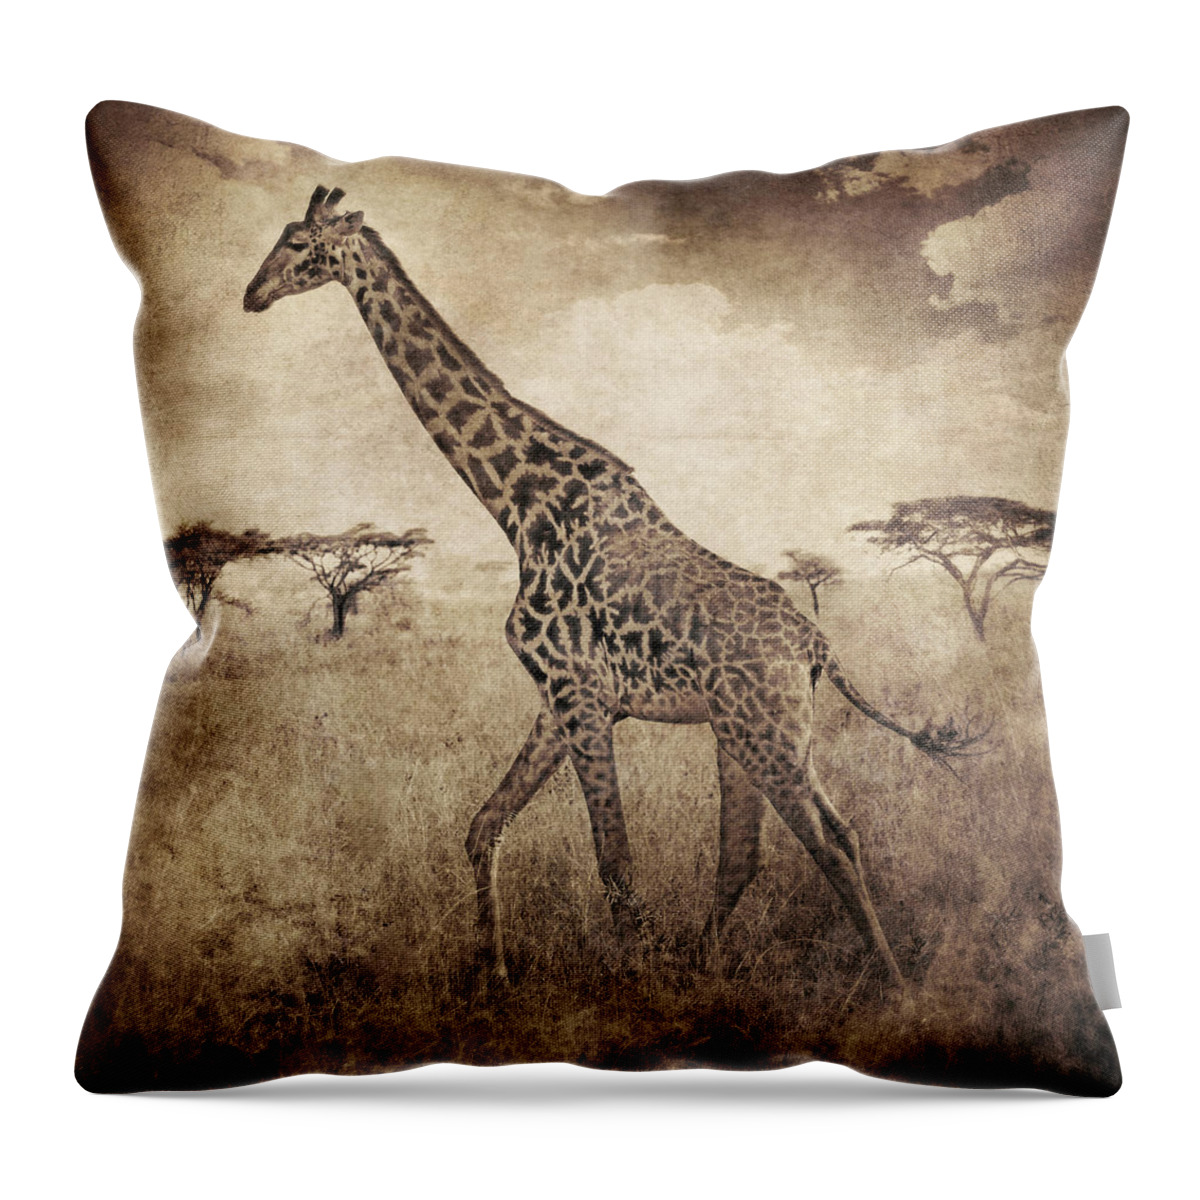 Brett Throw Pillow featuring the digital art Africa Series - Giraffe by Brett Pfister